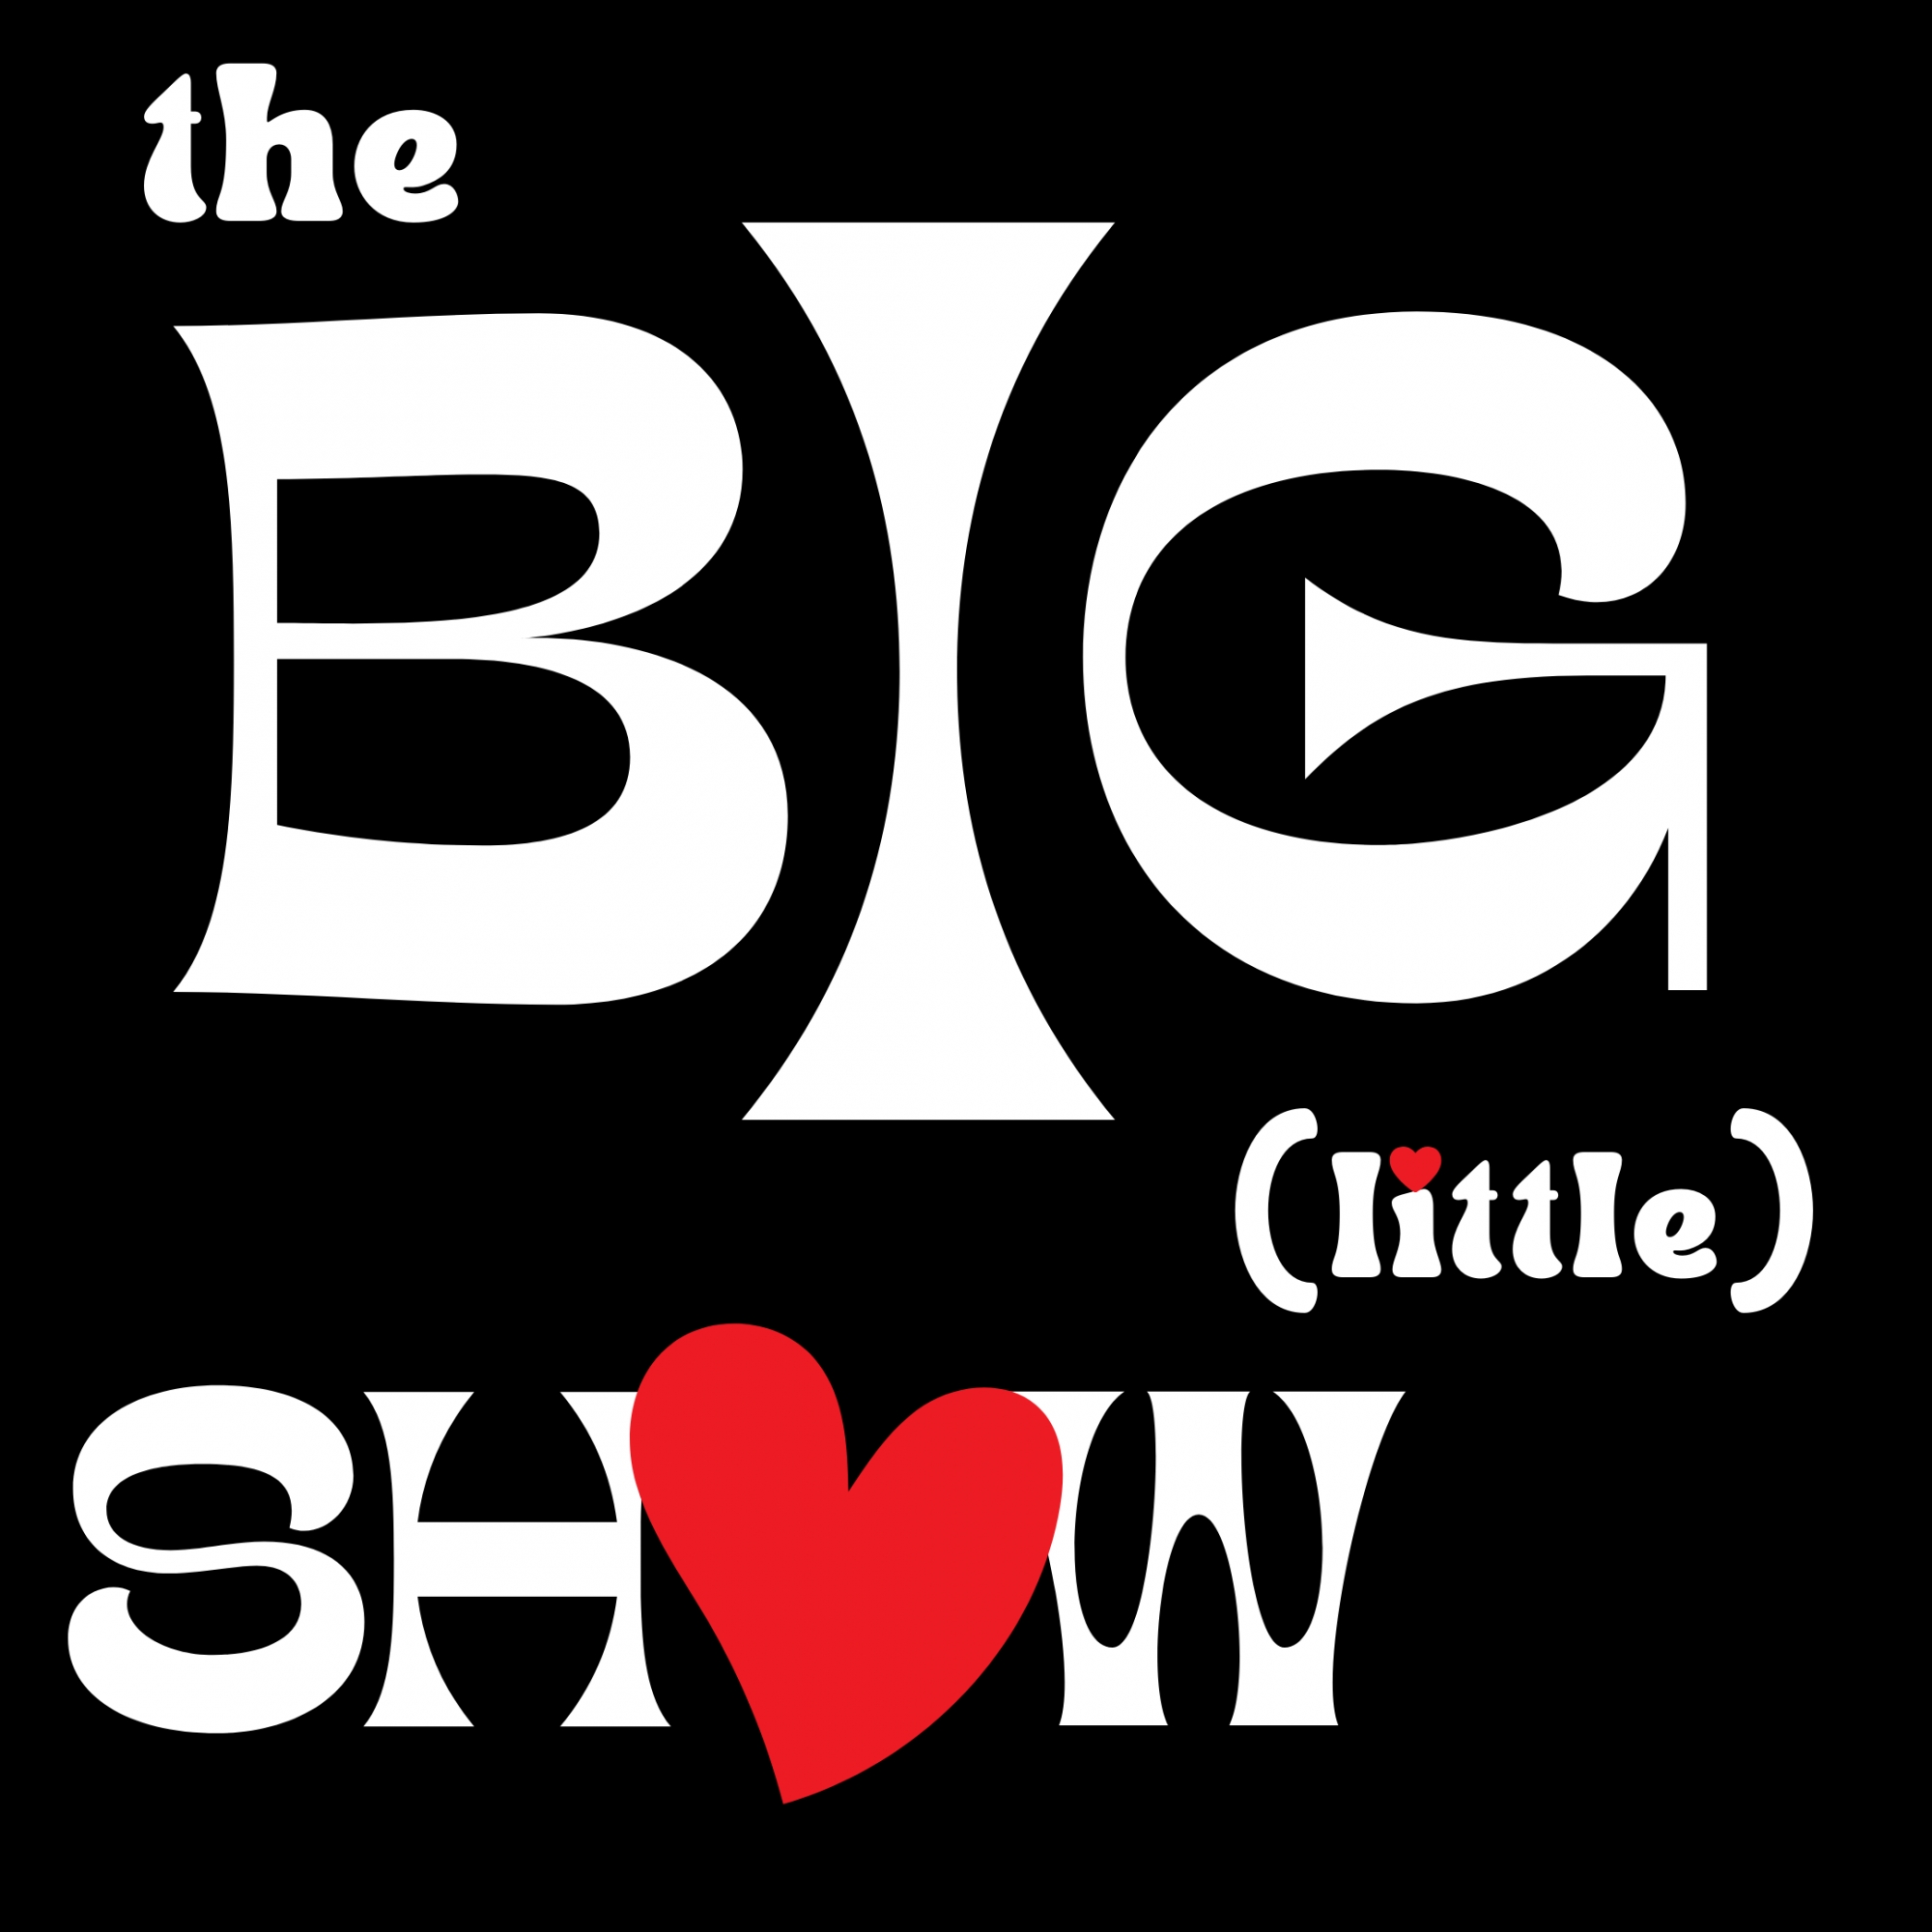 Dec '22 The Big (little) Show - Show 4